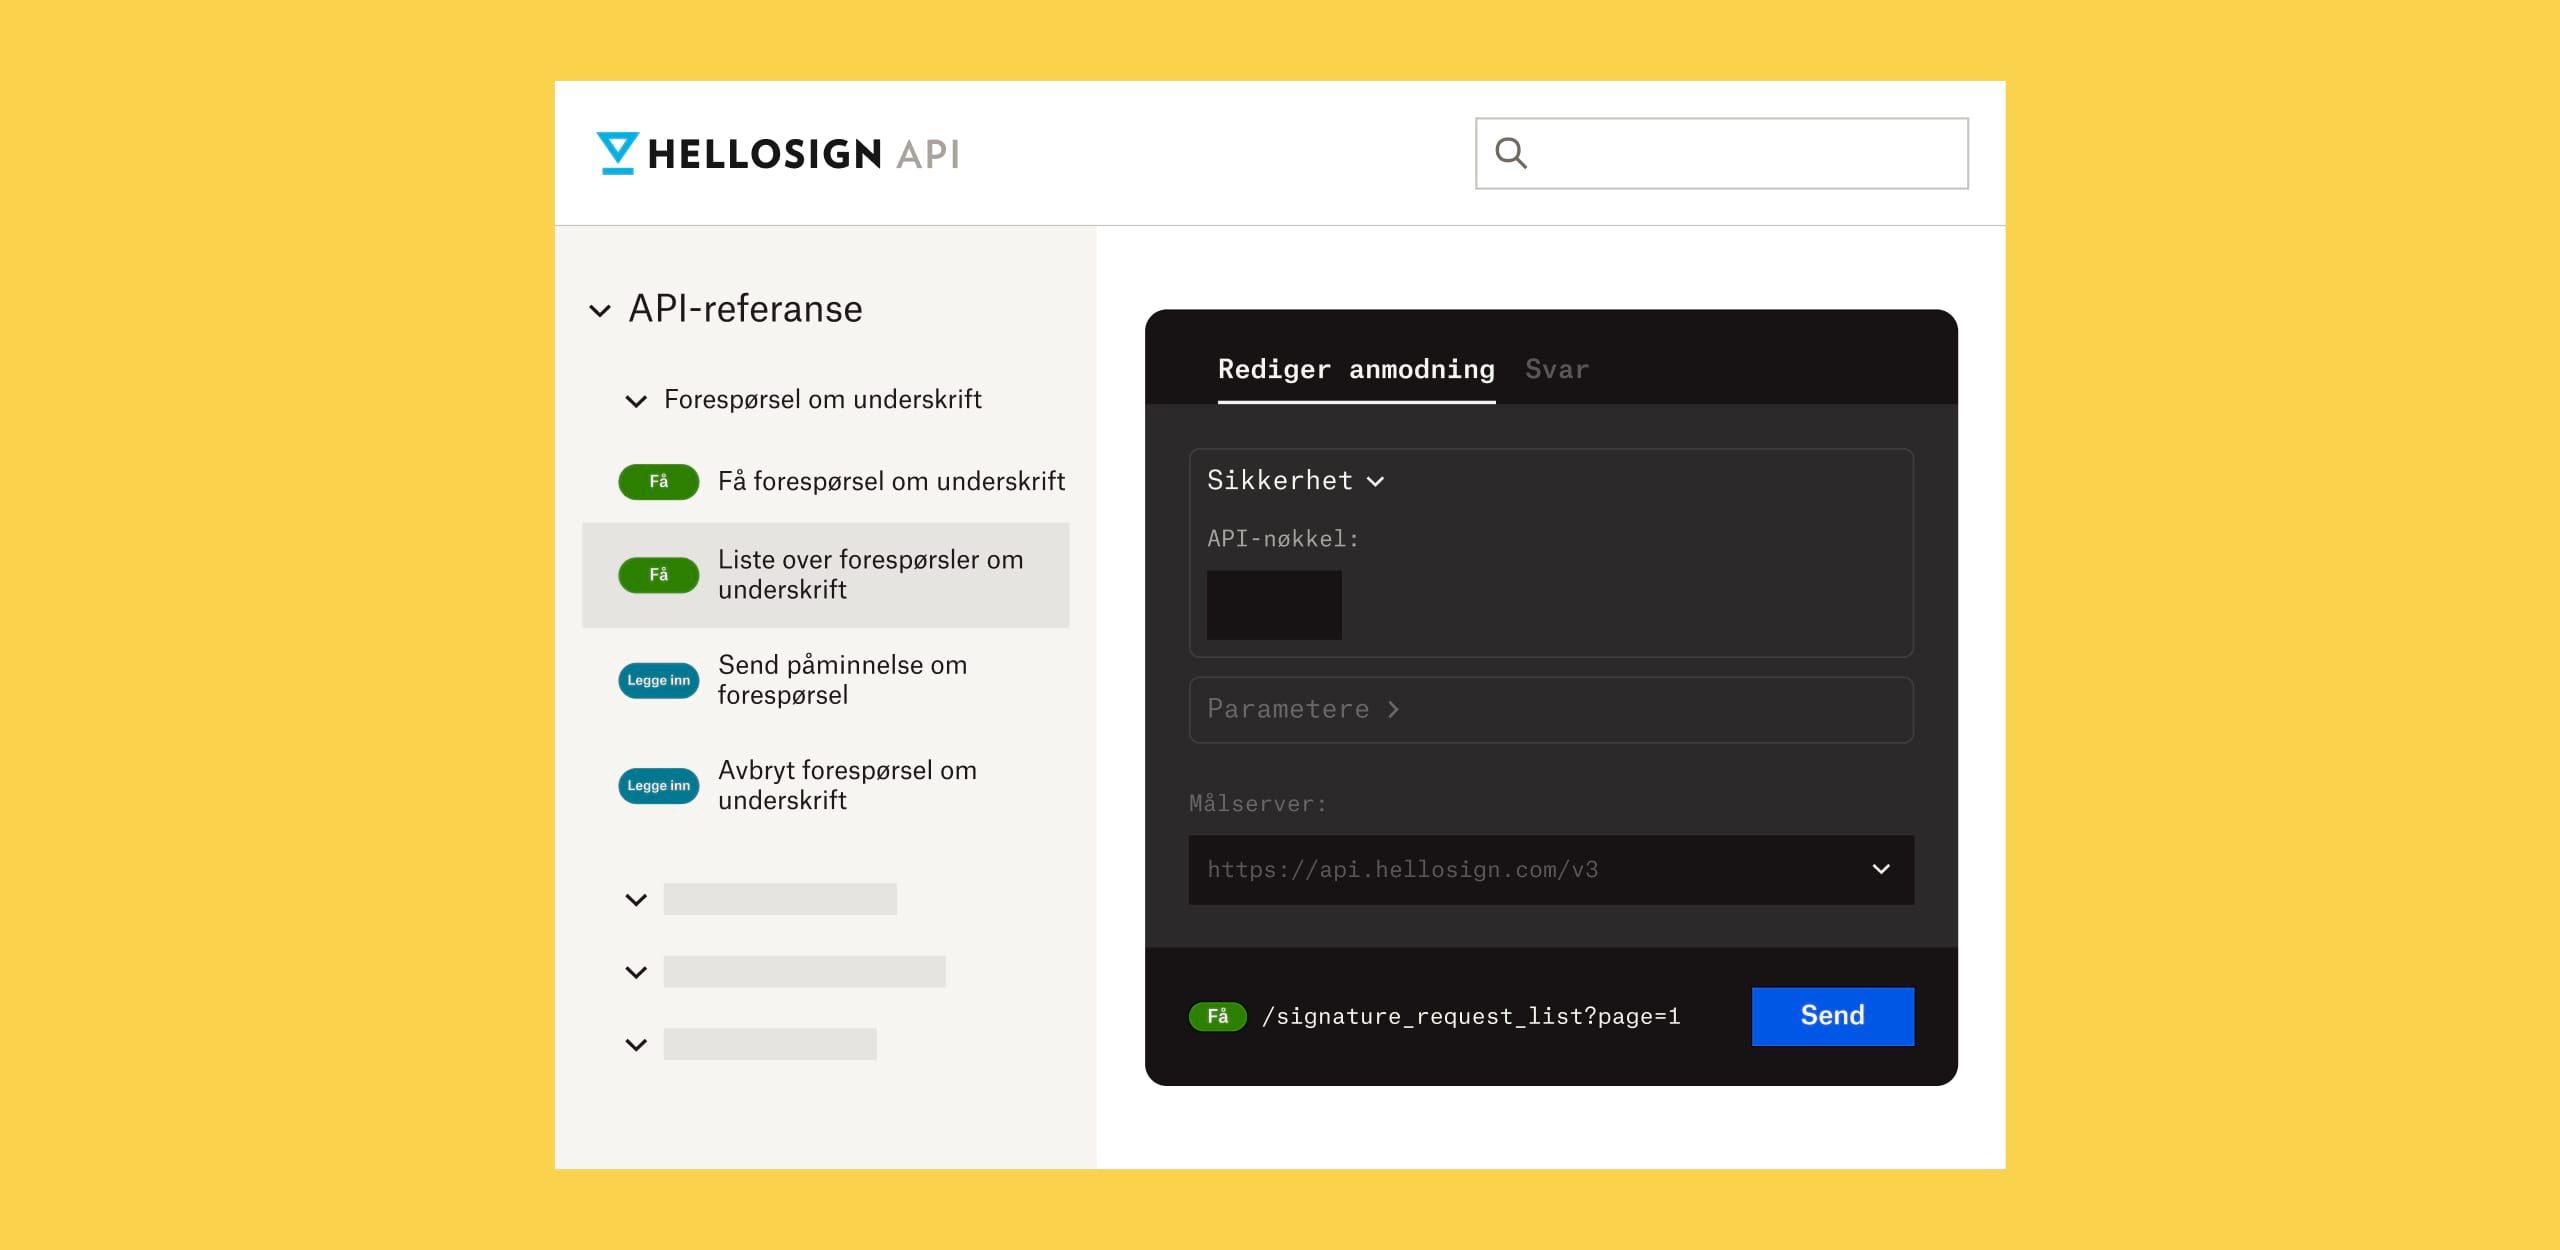 HelloSign API-referanseskjermen med svak, hvit tekst på svart bakgrunn